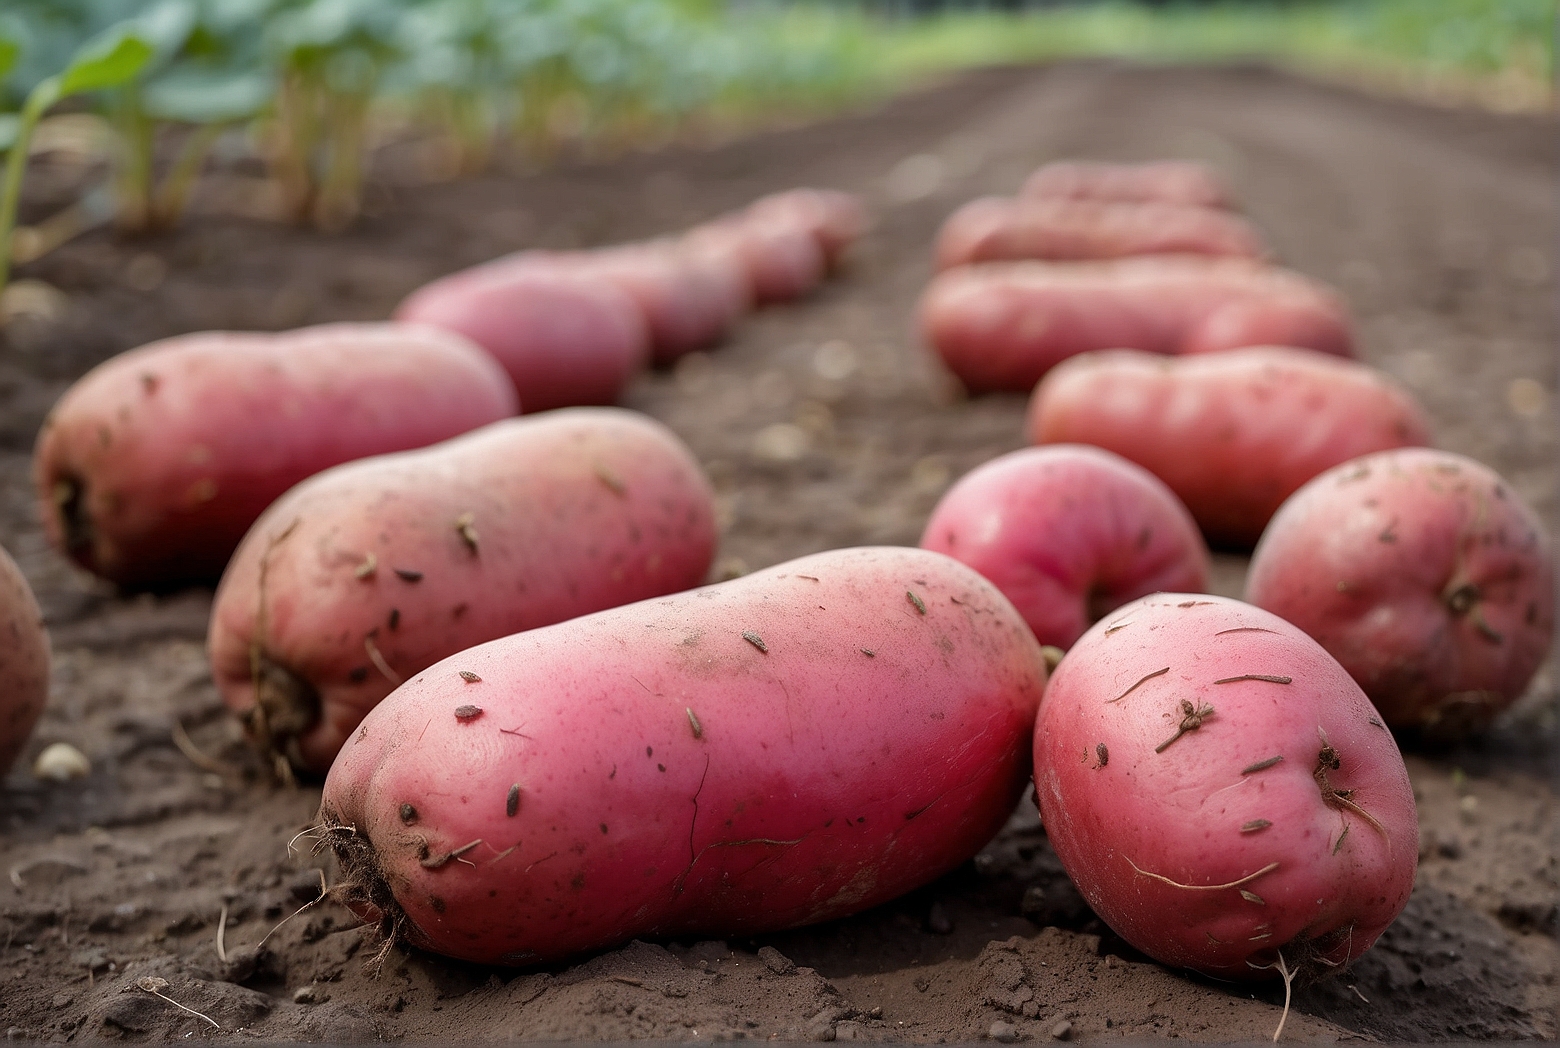 Default Growing Determinate Red Pontiac Seed Potatoes 2